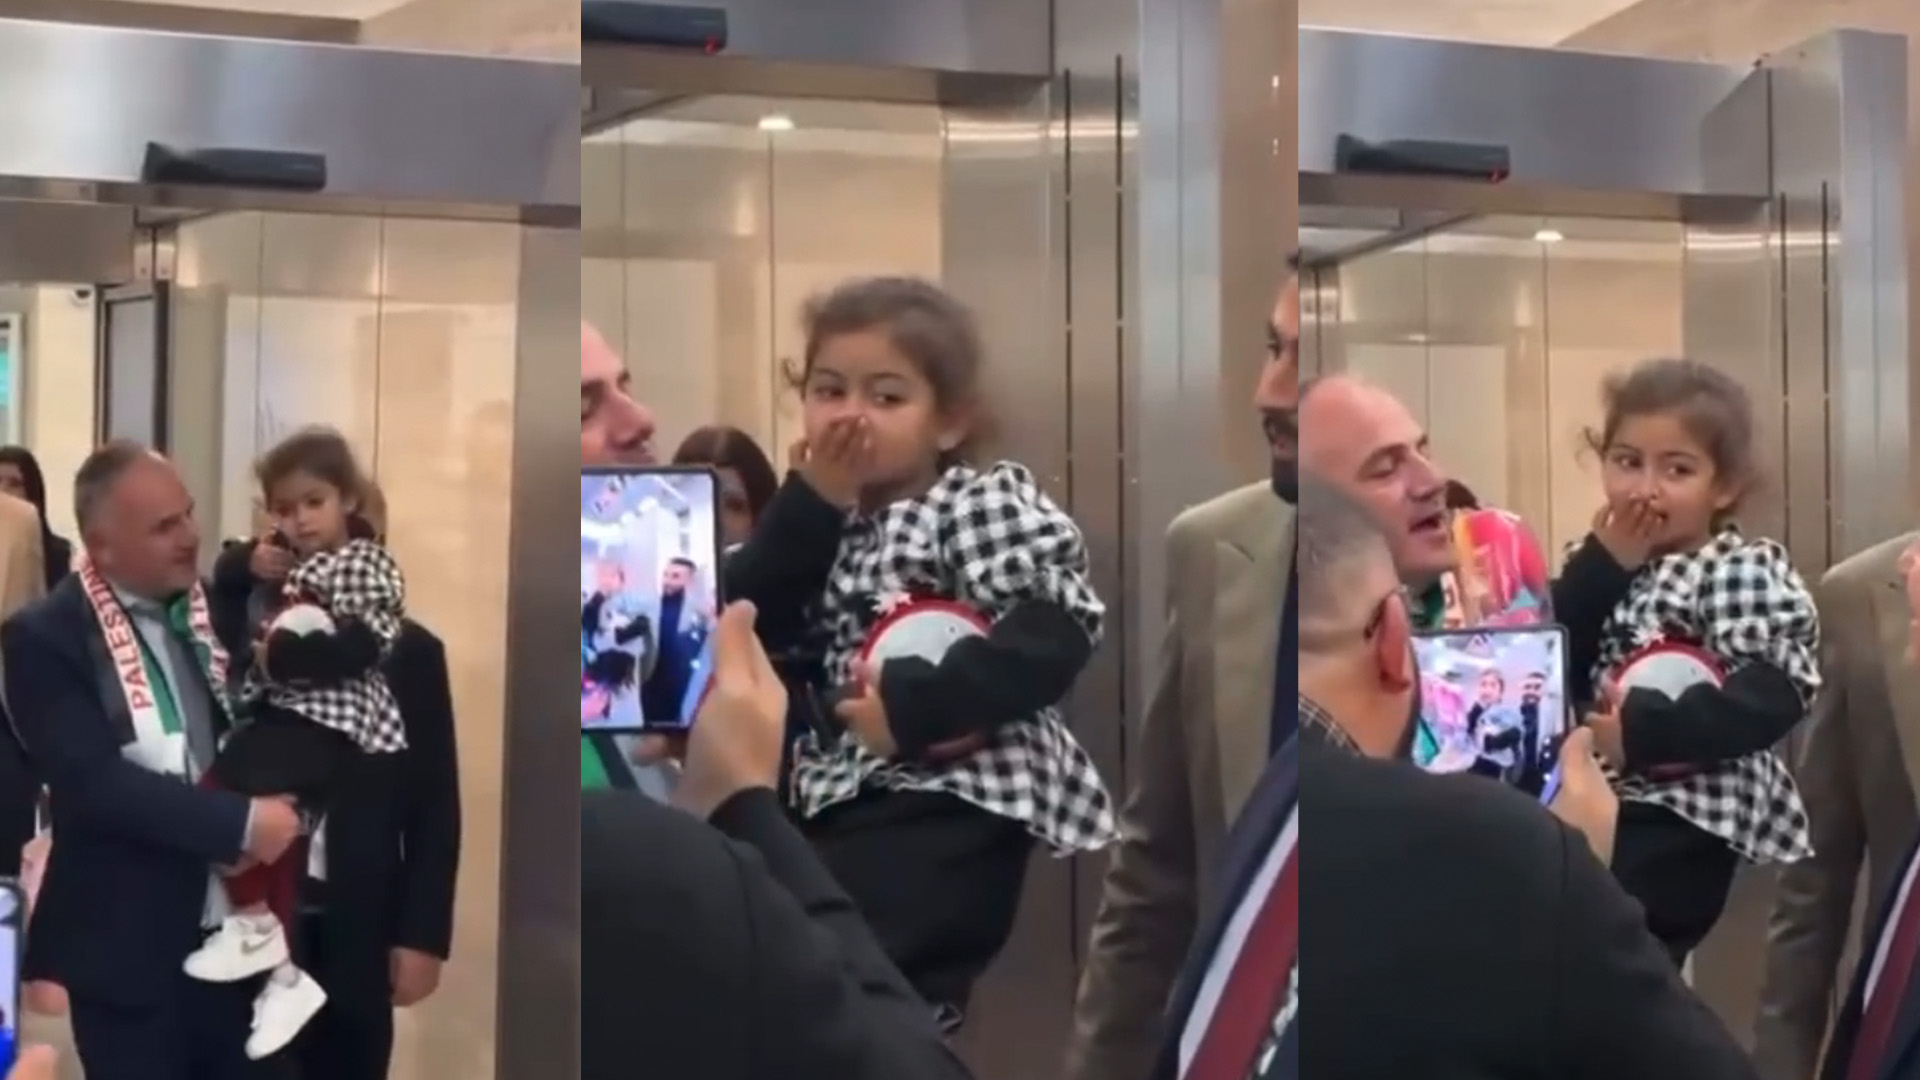 Free Palestine Chants Erupt as 3-Year-Old Selah Arrives in Malta